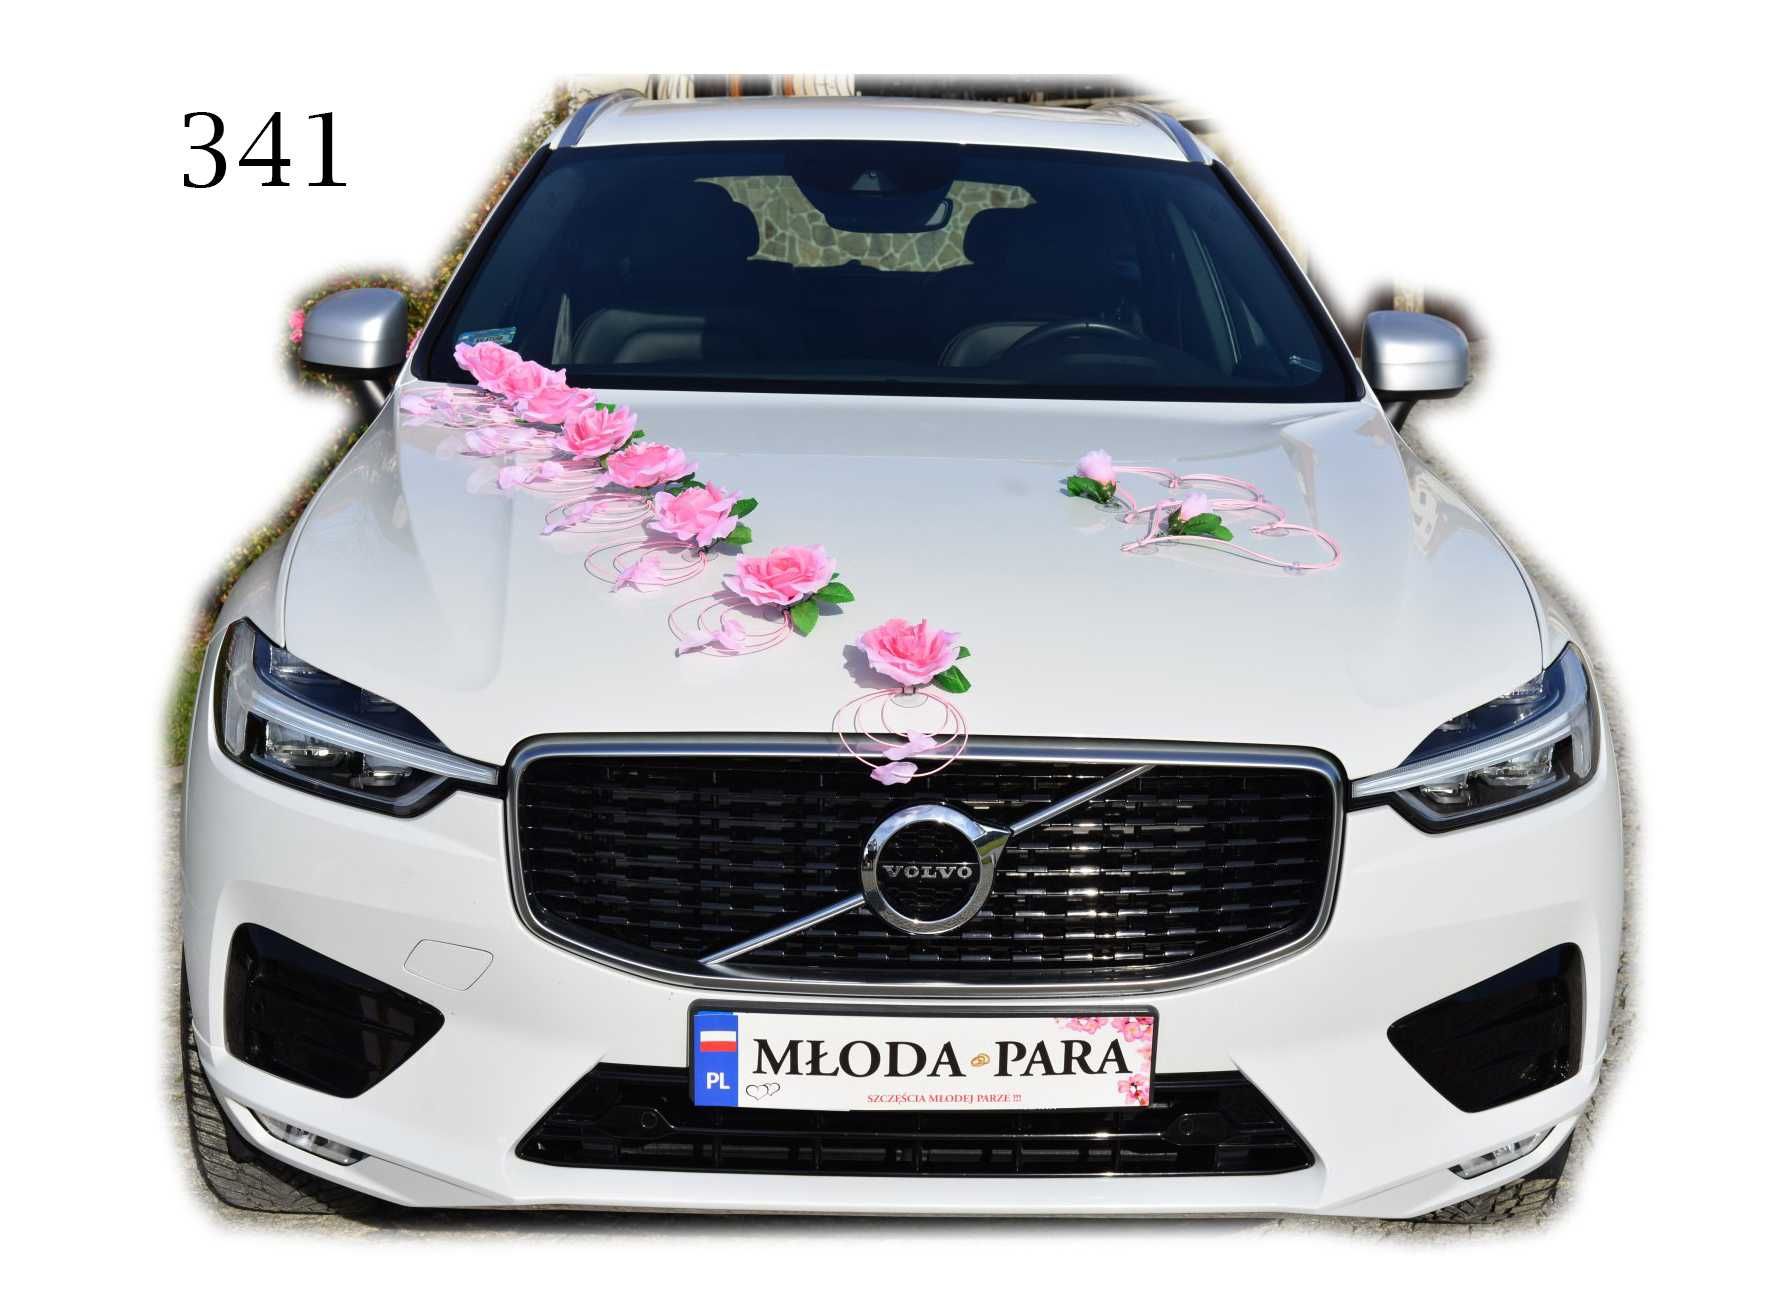 ŚLICZNA dekoracja na samochód do ślubu PUDROWY RÓŻ 341